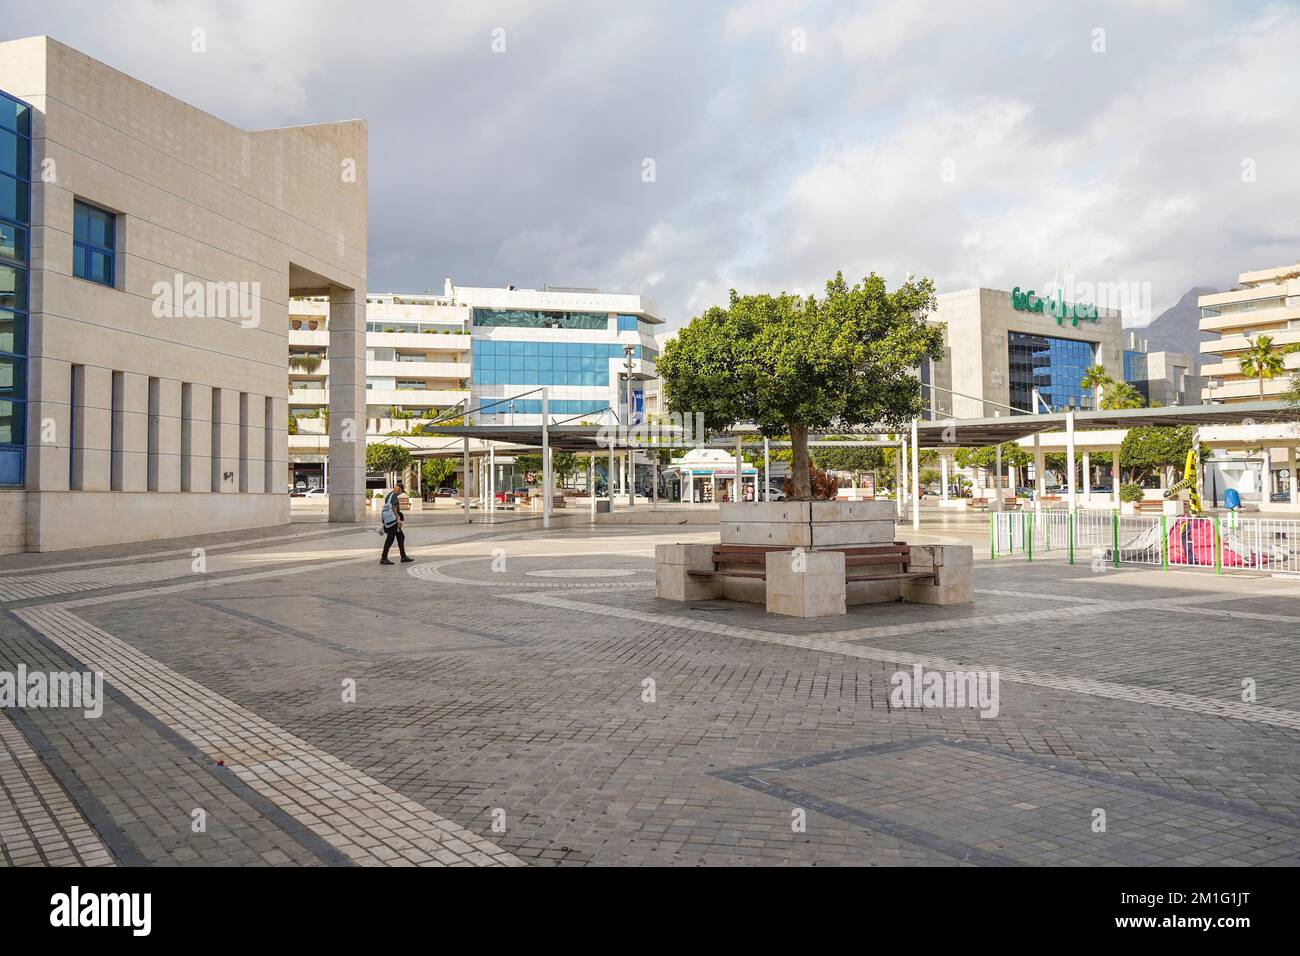 Antonio Banderas square, Puerto Banus, Marbella, Costa del Sol, Spain. Stock Photo